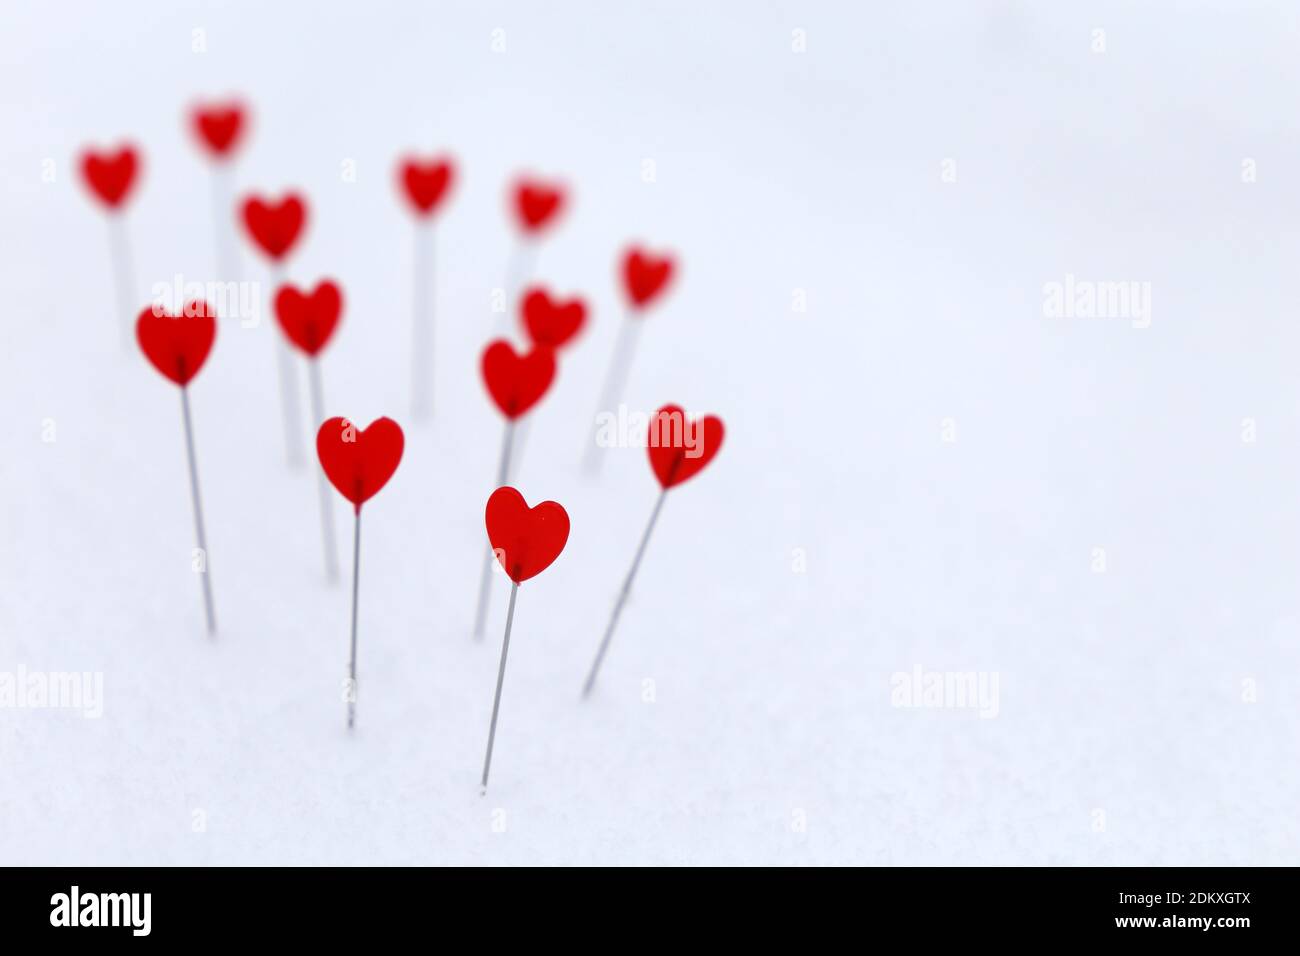 Rote Herzen auf dem Schnee. Hintergrund für romantische Liebe, Grußkarte, Valentinstag Stockfoto